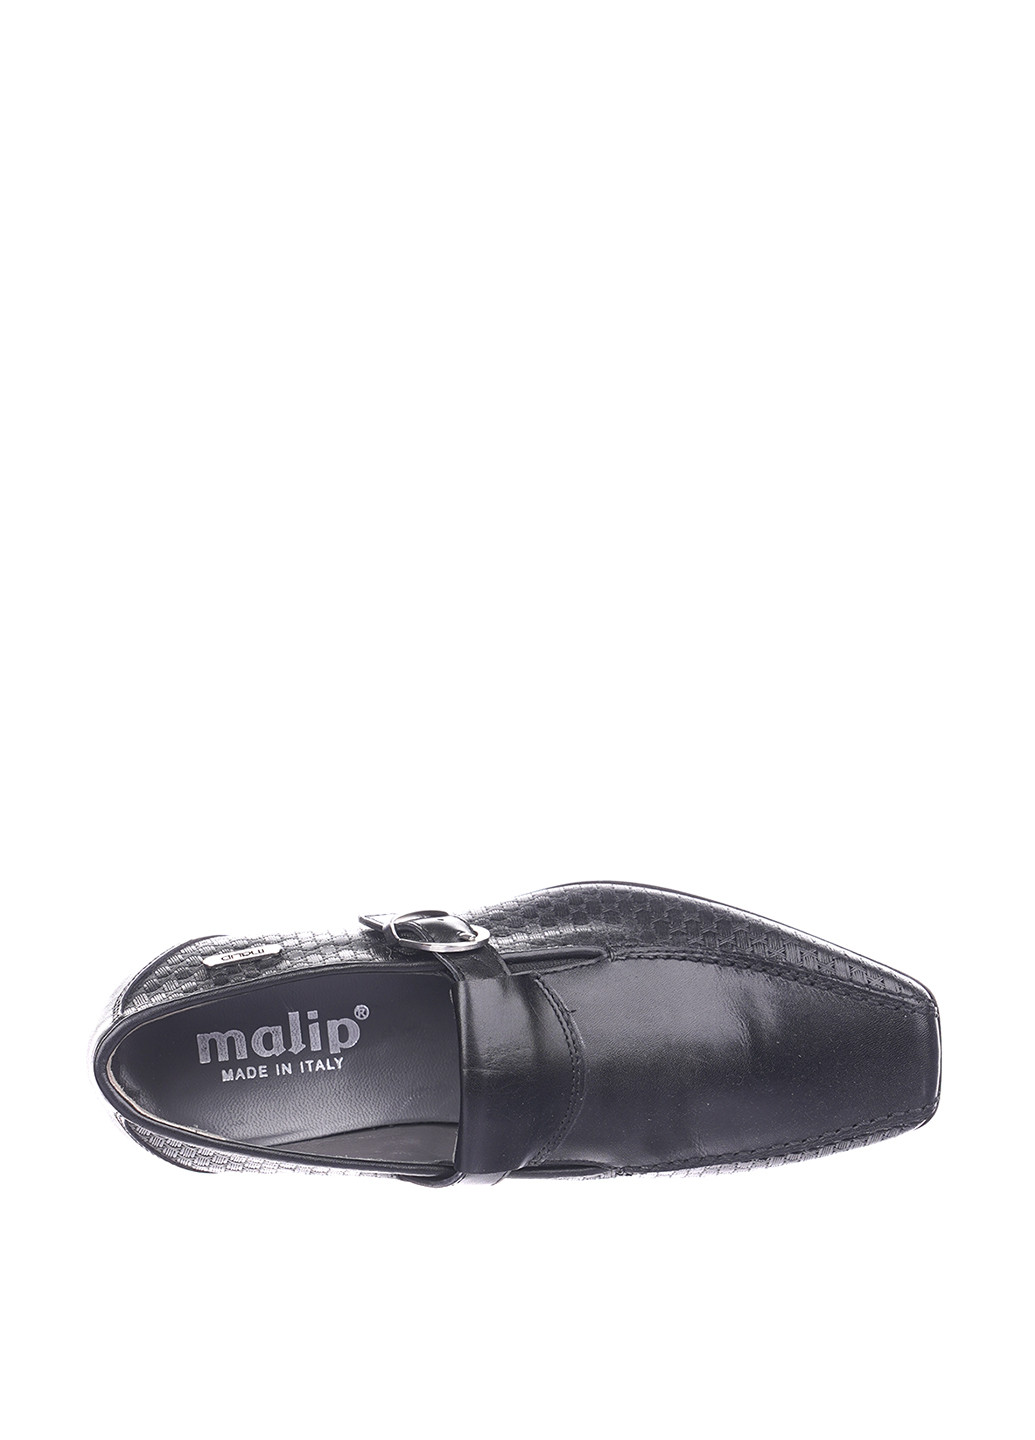 Черные туфли с ремешком Malip